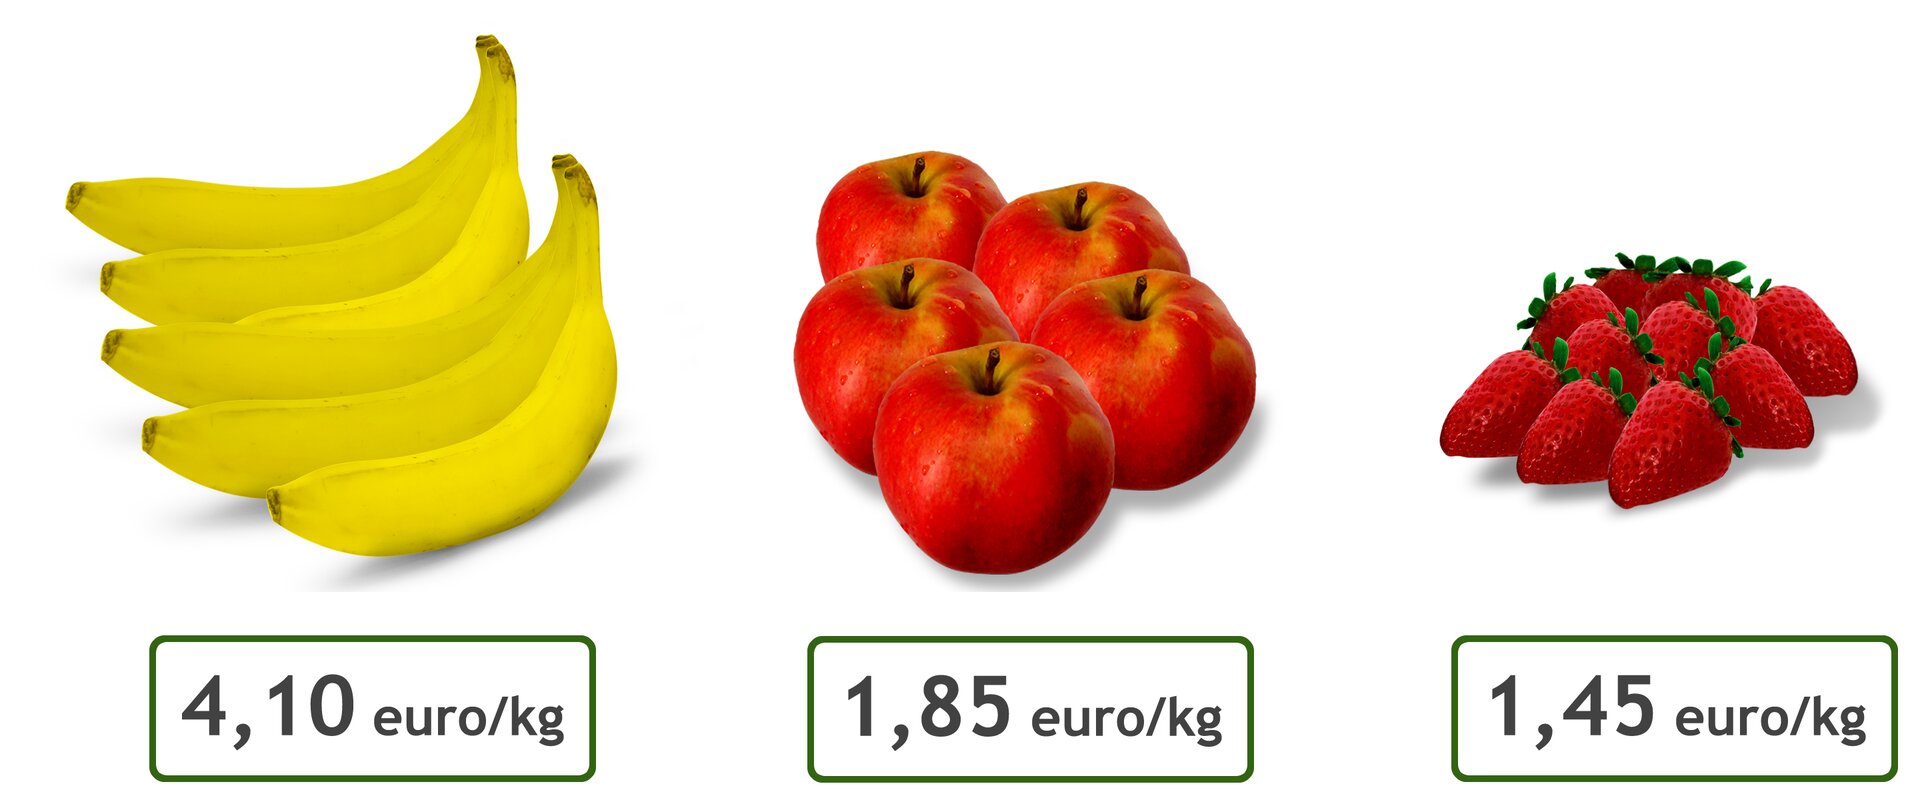 Rysunek owoców. Banany - cena 4,10 euro za kilogram. Jabłka - cena 1,85 euro za kilogram. Truskawki - cena 1,45 euro za kilogram.